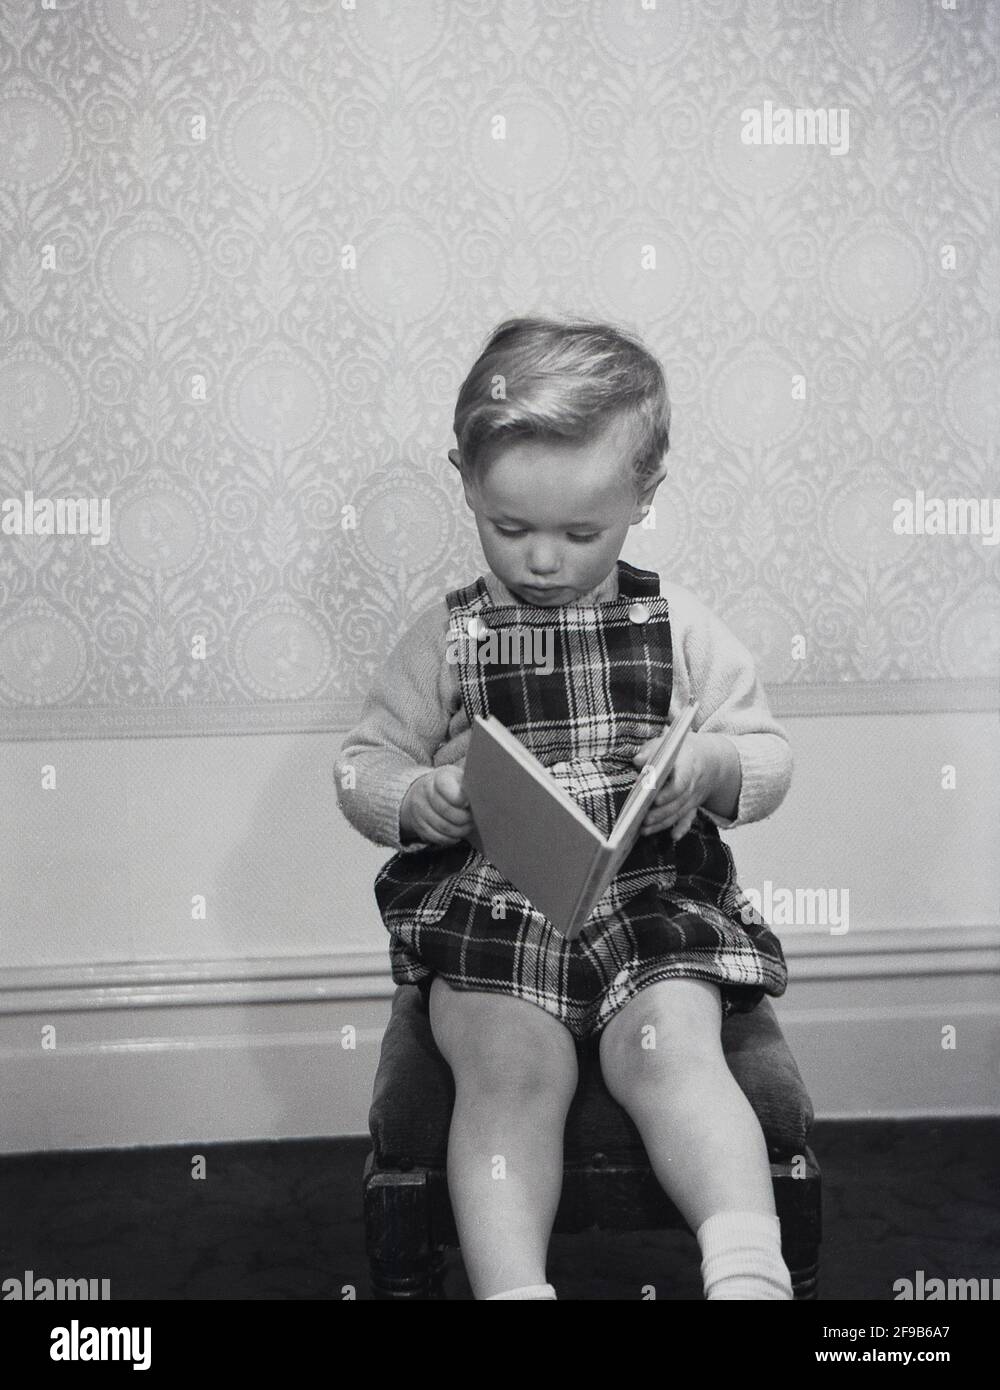 In den 1960er Jahren, historisch, in einem Raum, sitzt ein kleiner Junge mit einem Paar Tartan-gemusterter Latzhose auf einem Hocker und liest ein Buch, England, Großbritannien. Stockfoto